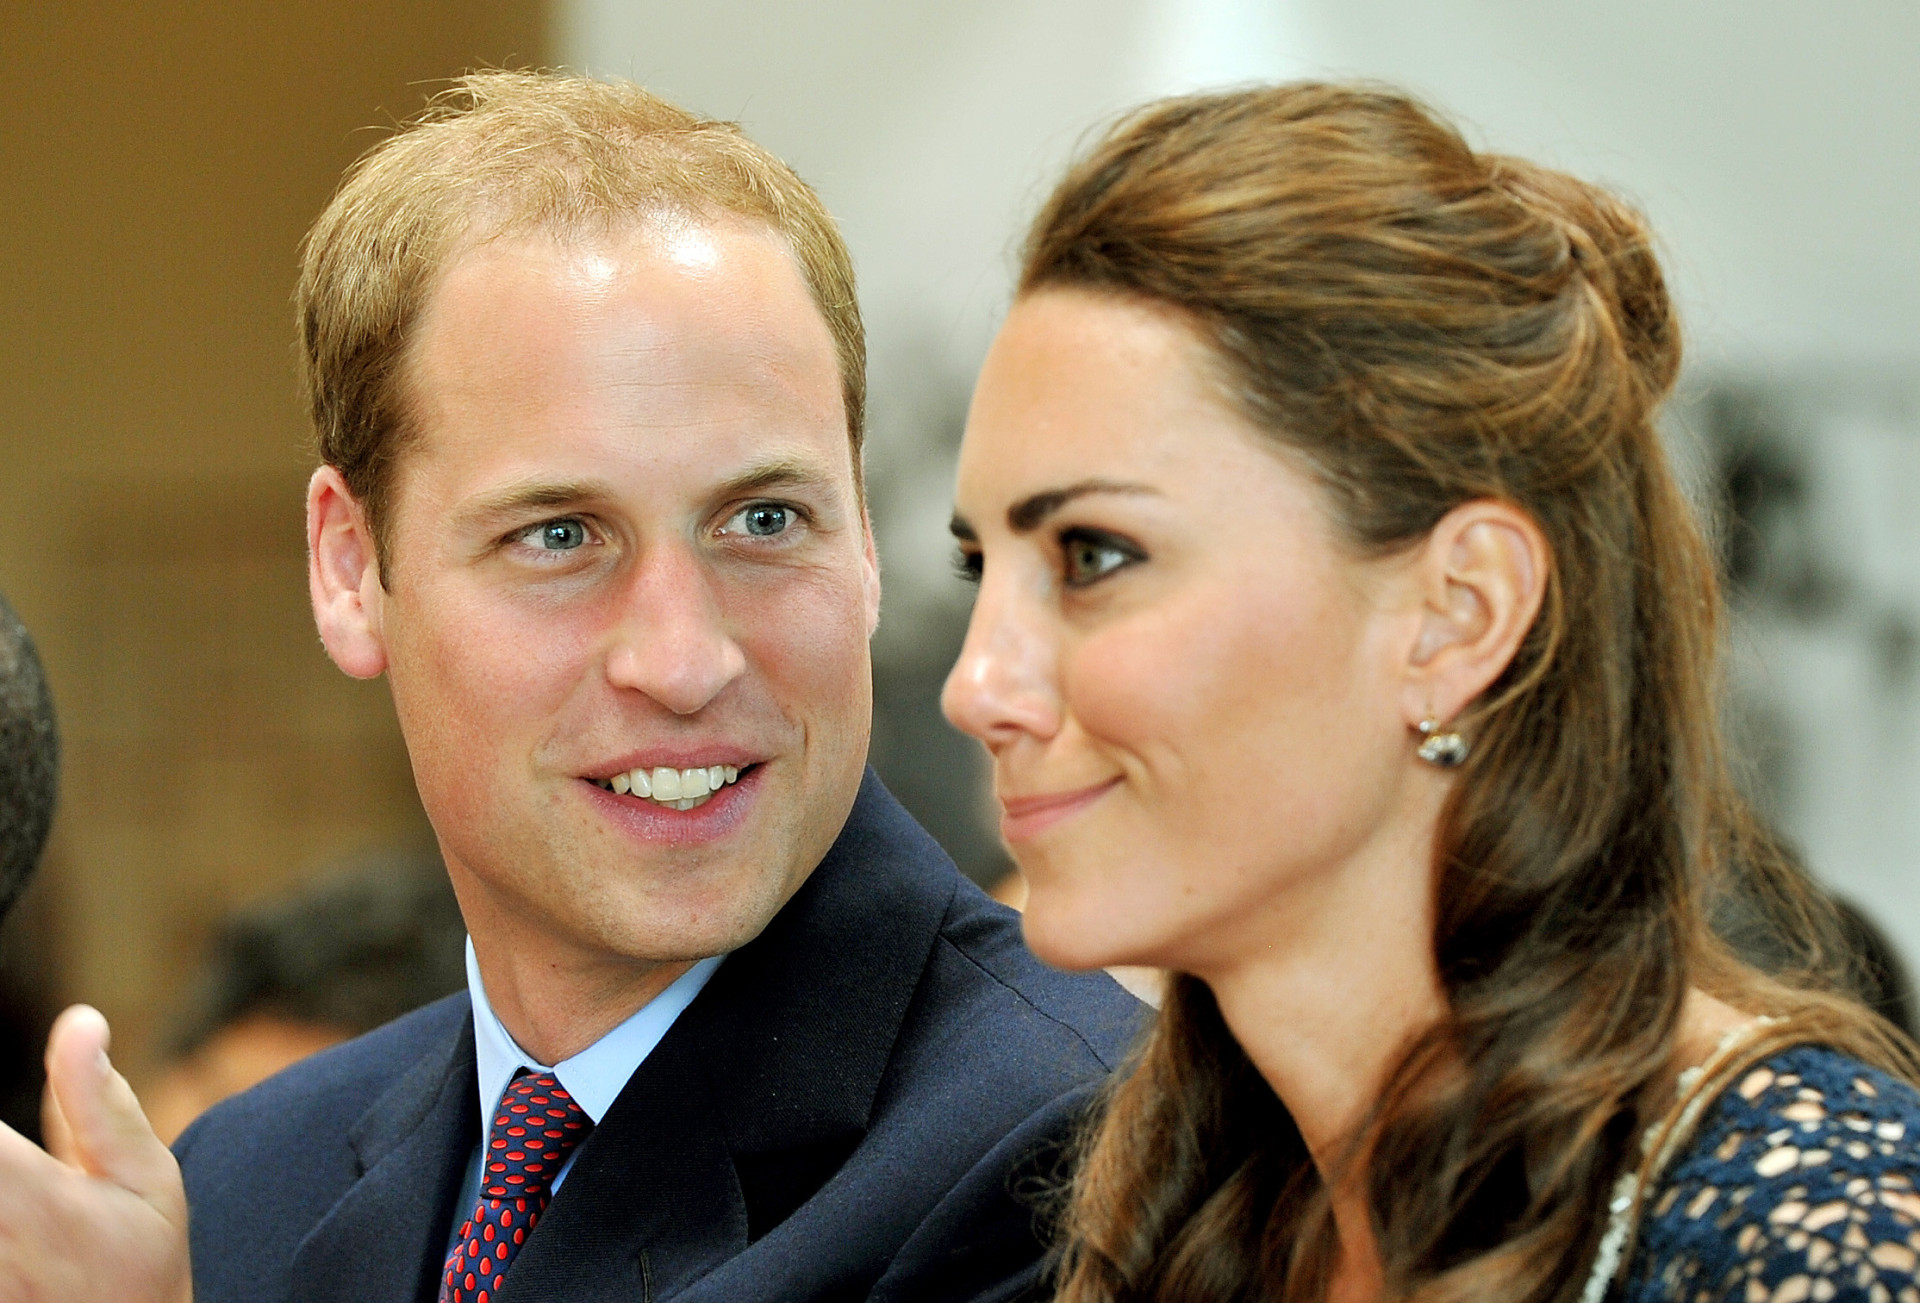 <p>Mas há uma reviravolta: foi divulgado que o Príncipe William teria também namorado uma das ex-namoradas de Henry Ropner. Se isso realmente aconteceu ou não, provavelmente nunca saberemos.</p>